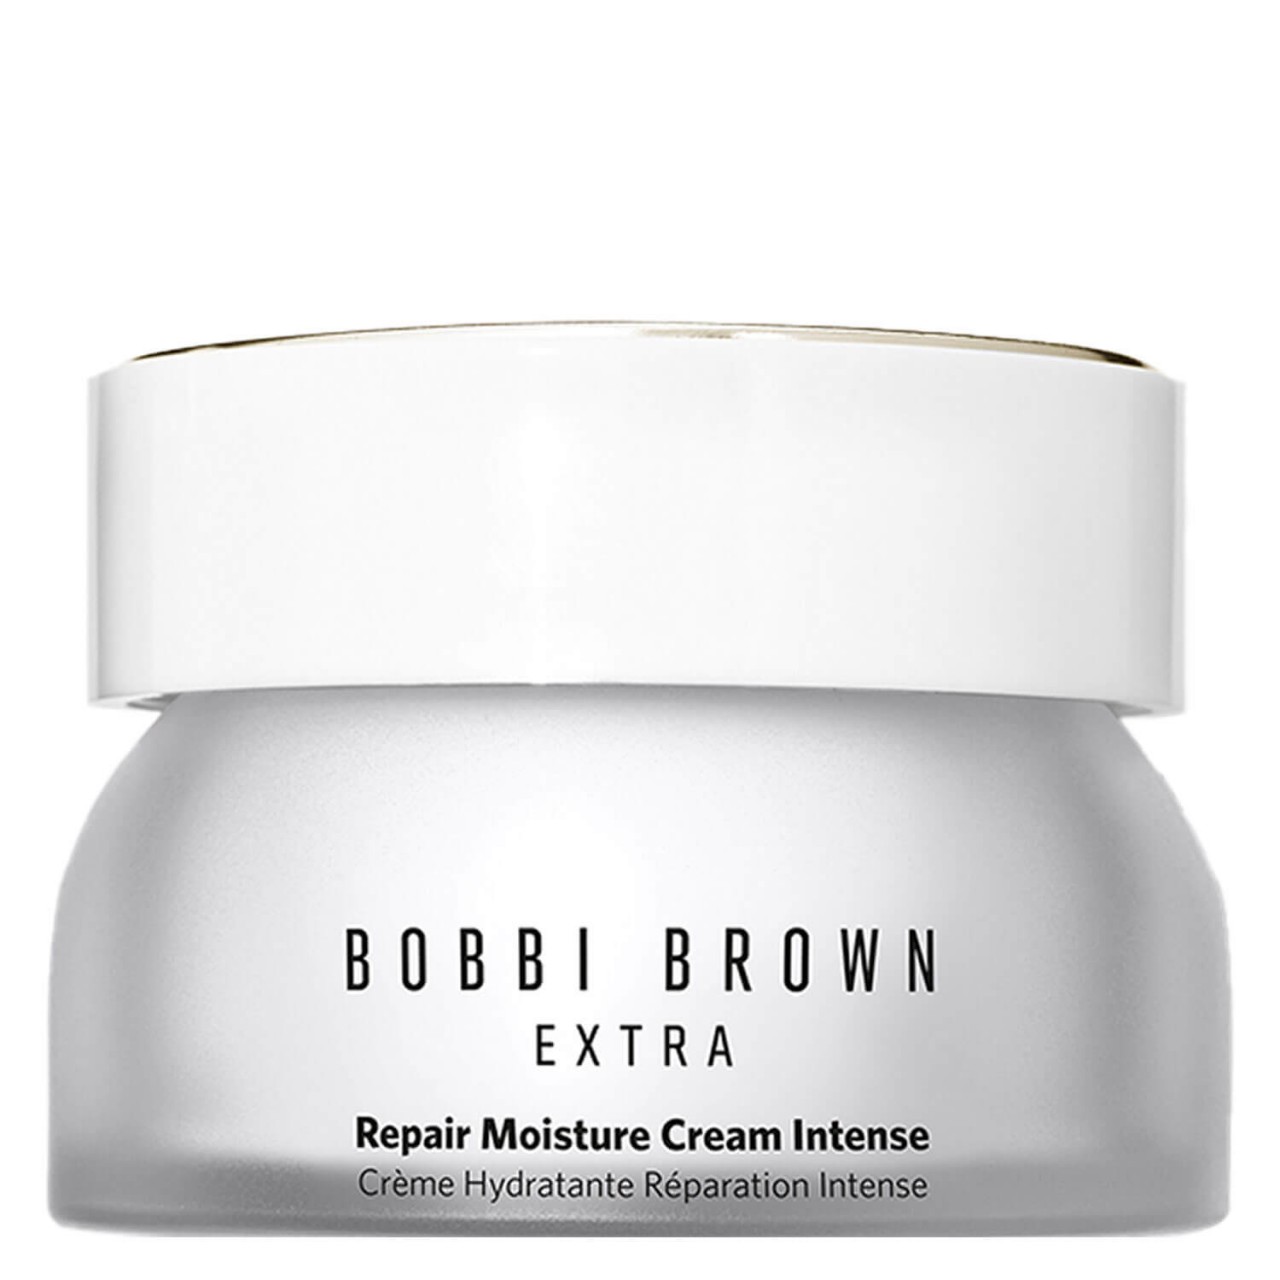 BB Skincare - EXTRA Repair Moisture Cream Intense